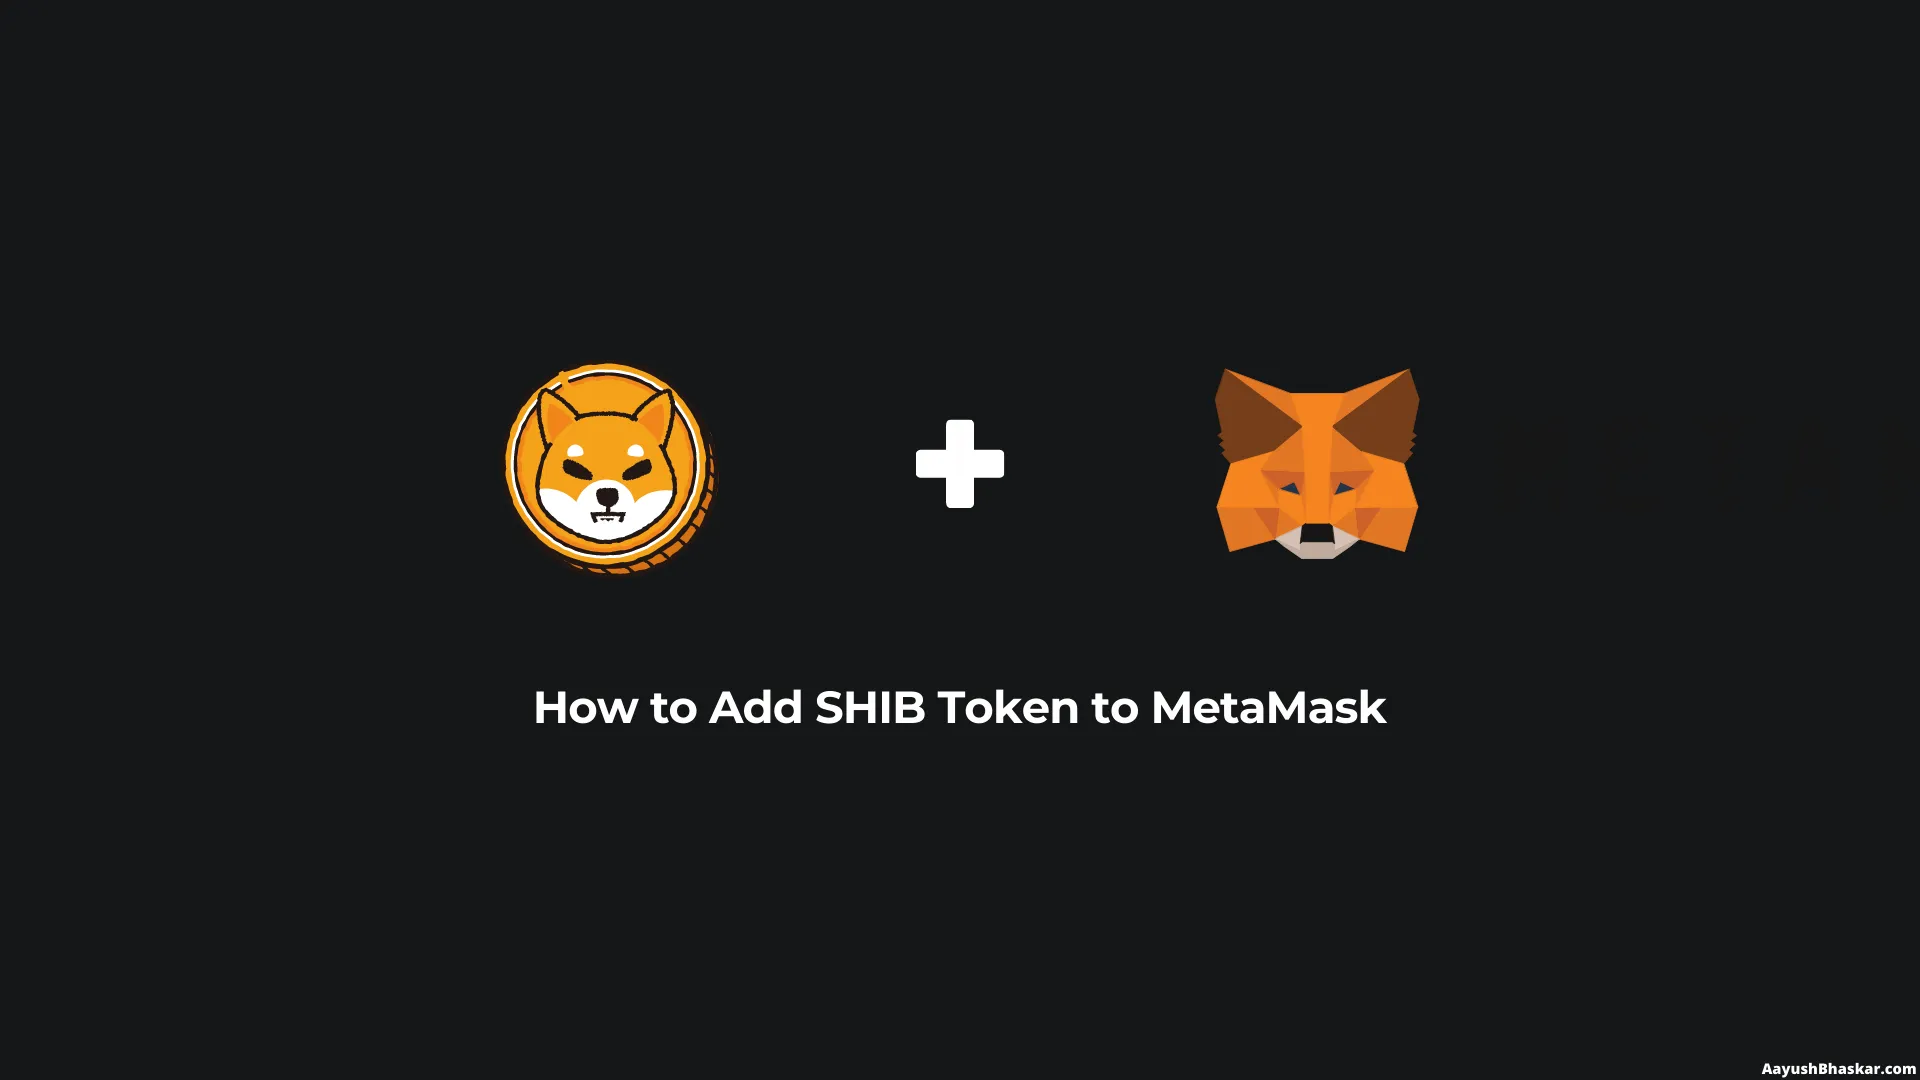 1. Keep your Metamask wallet secure